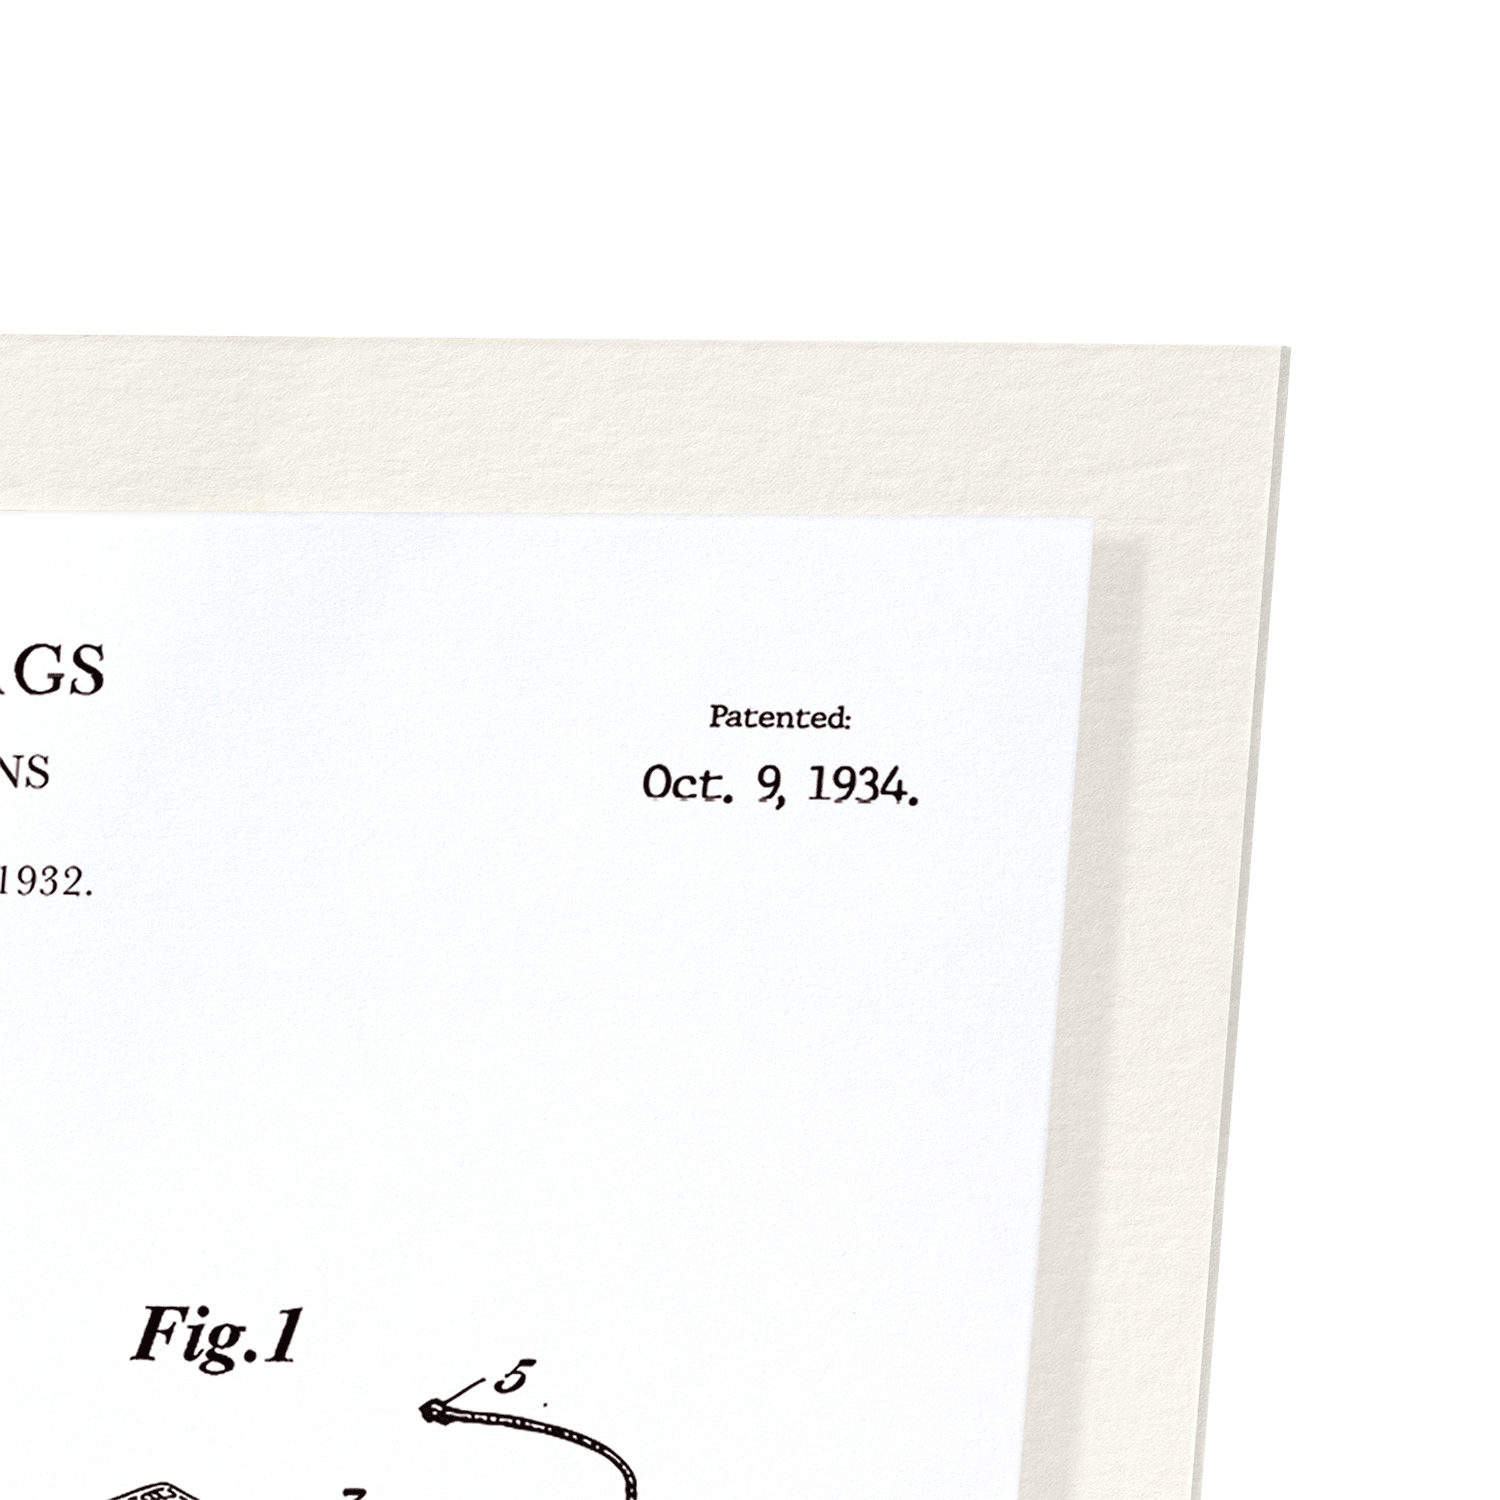 PATENT OF TEA BAGS (1934): Patent Art Print